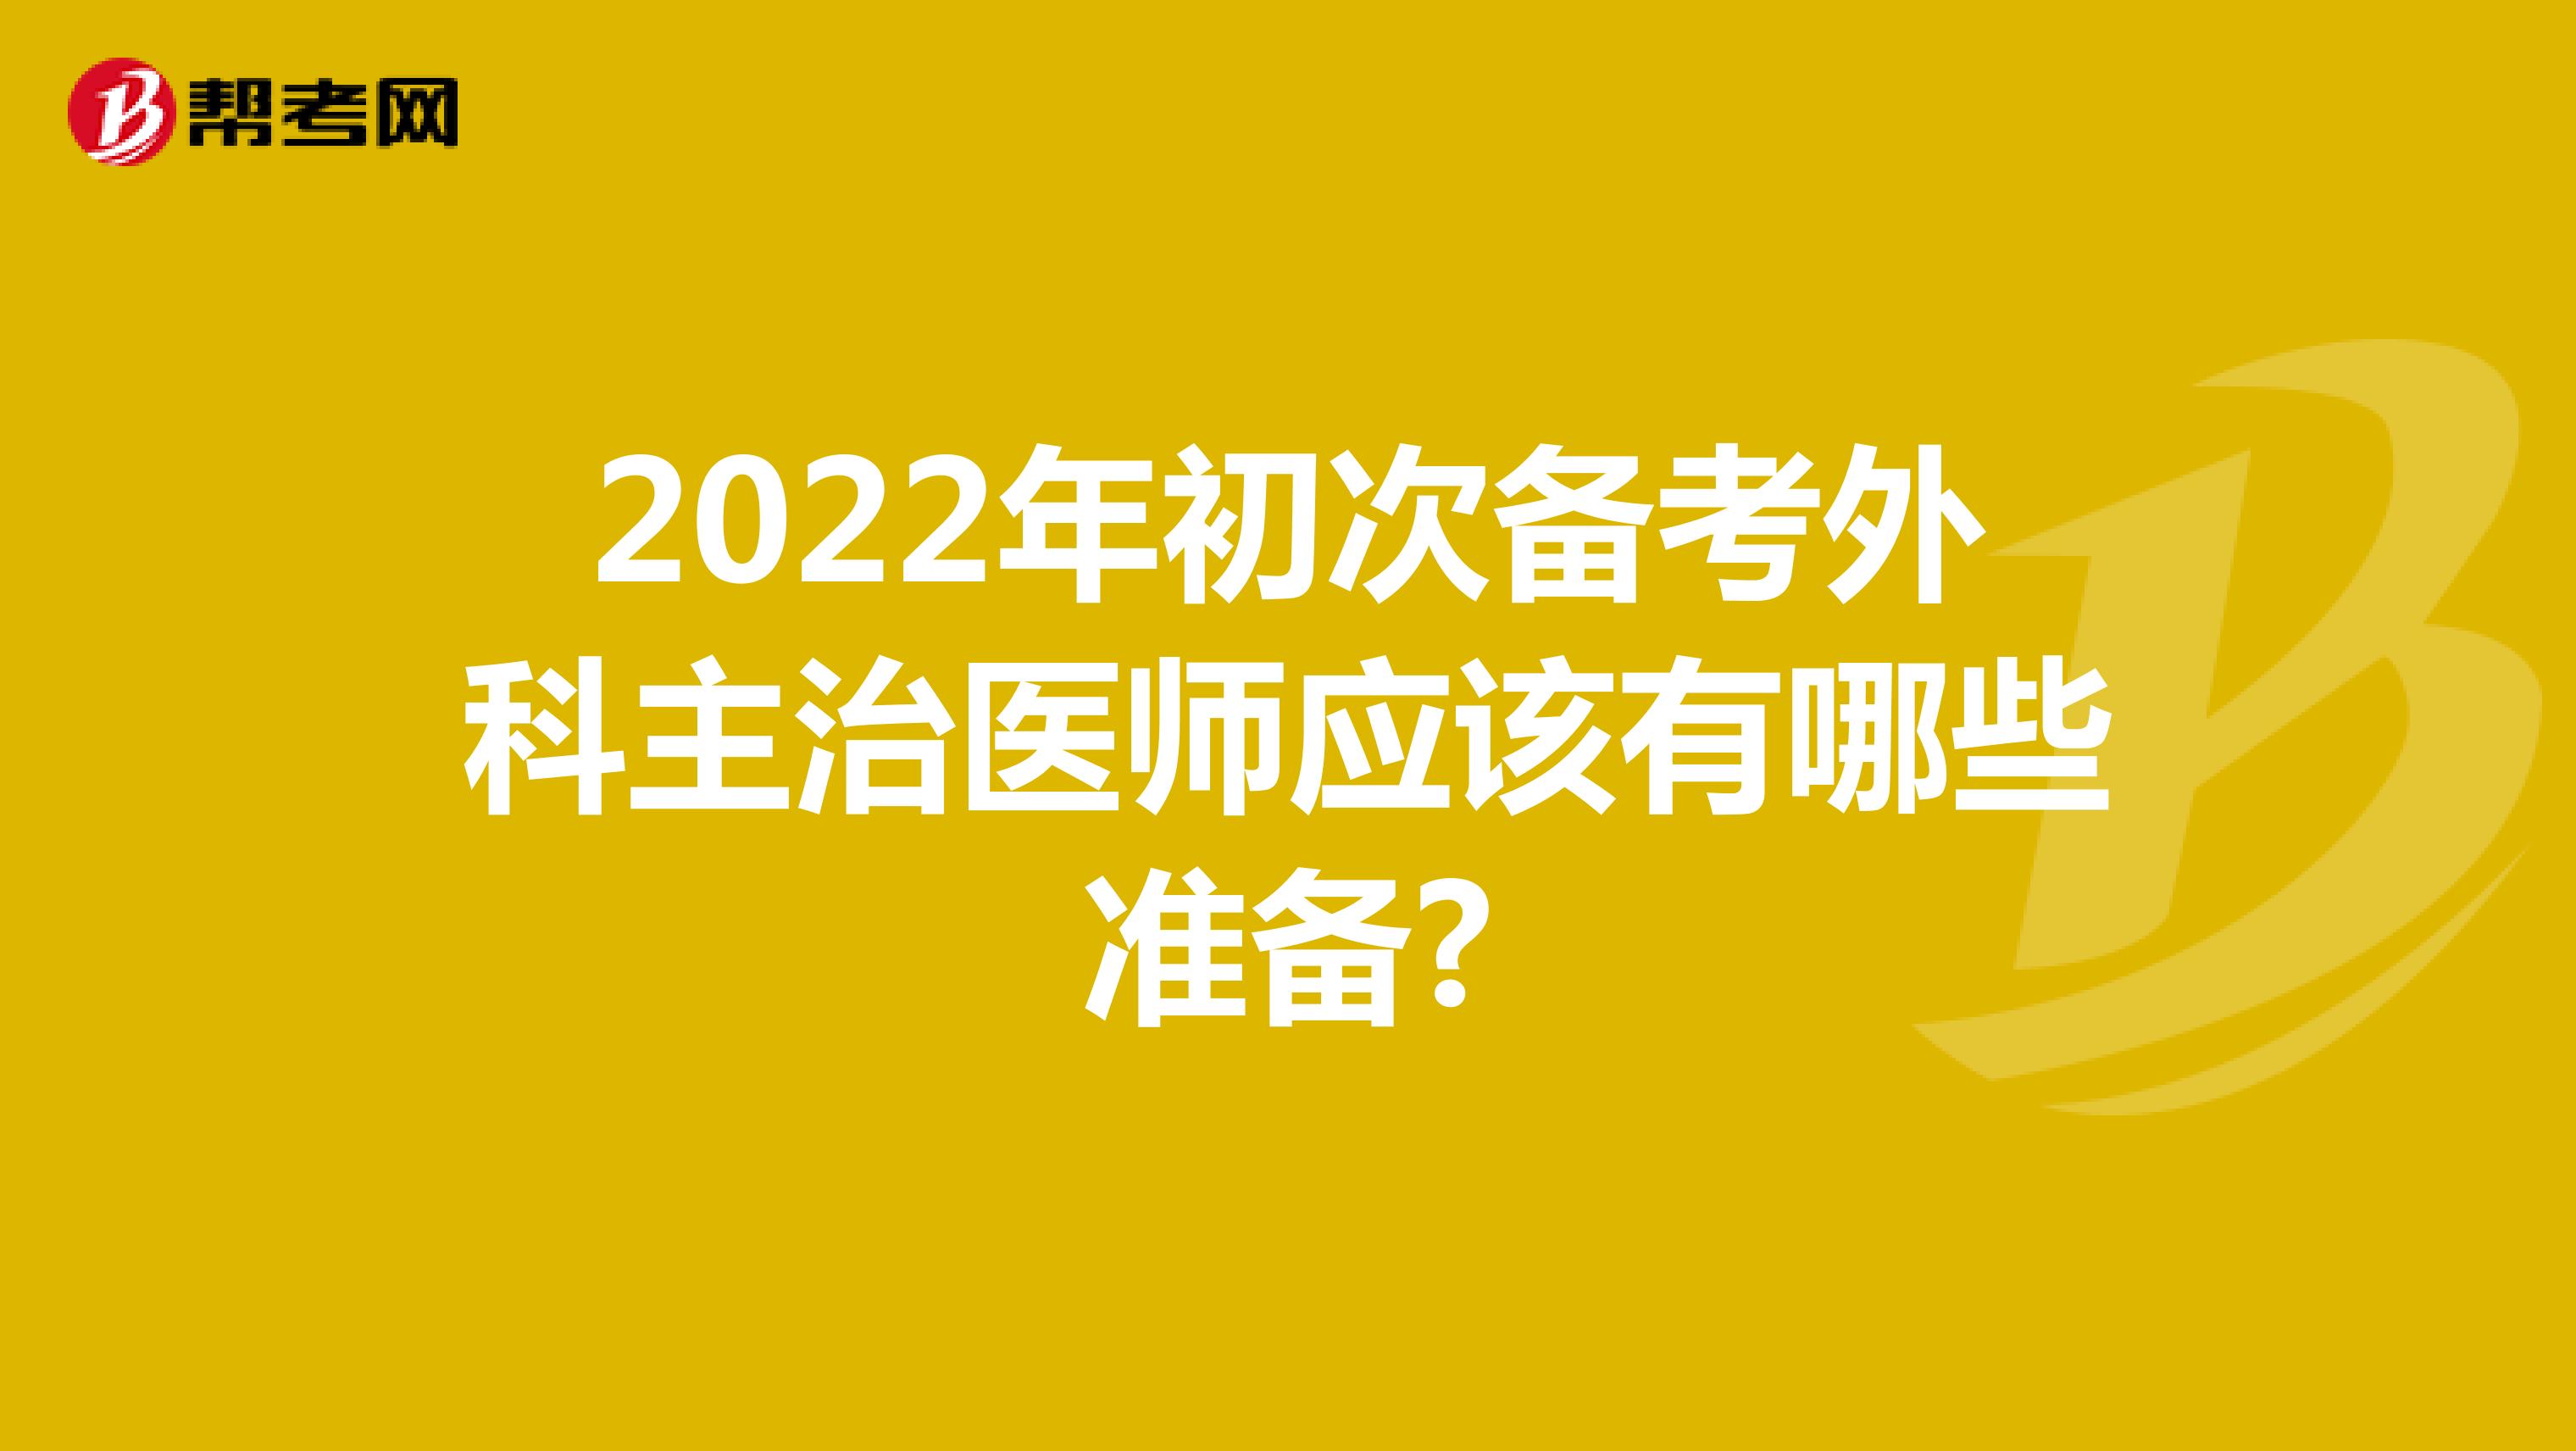 2022年初次备考外科主治医师应该有哪些准备?